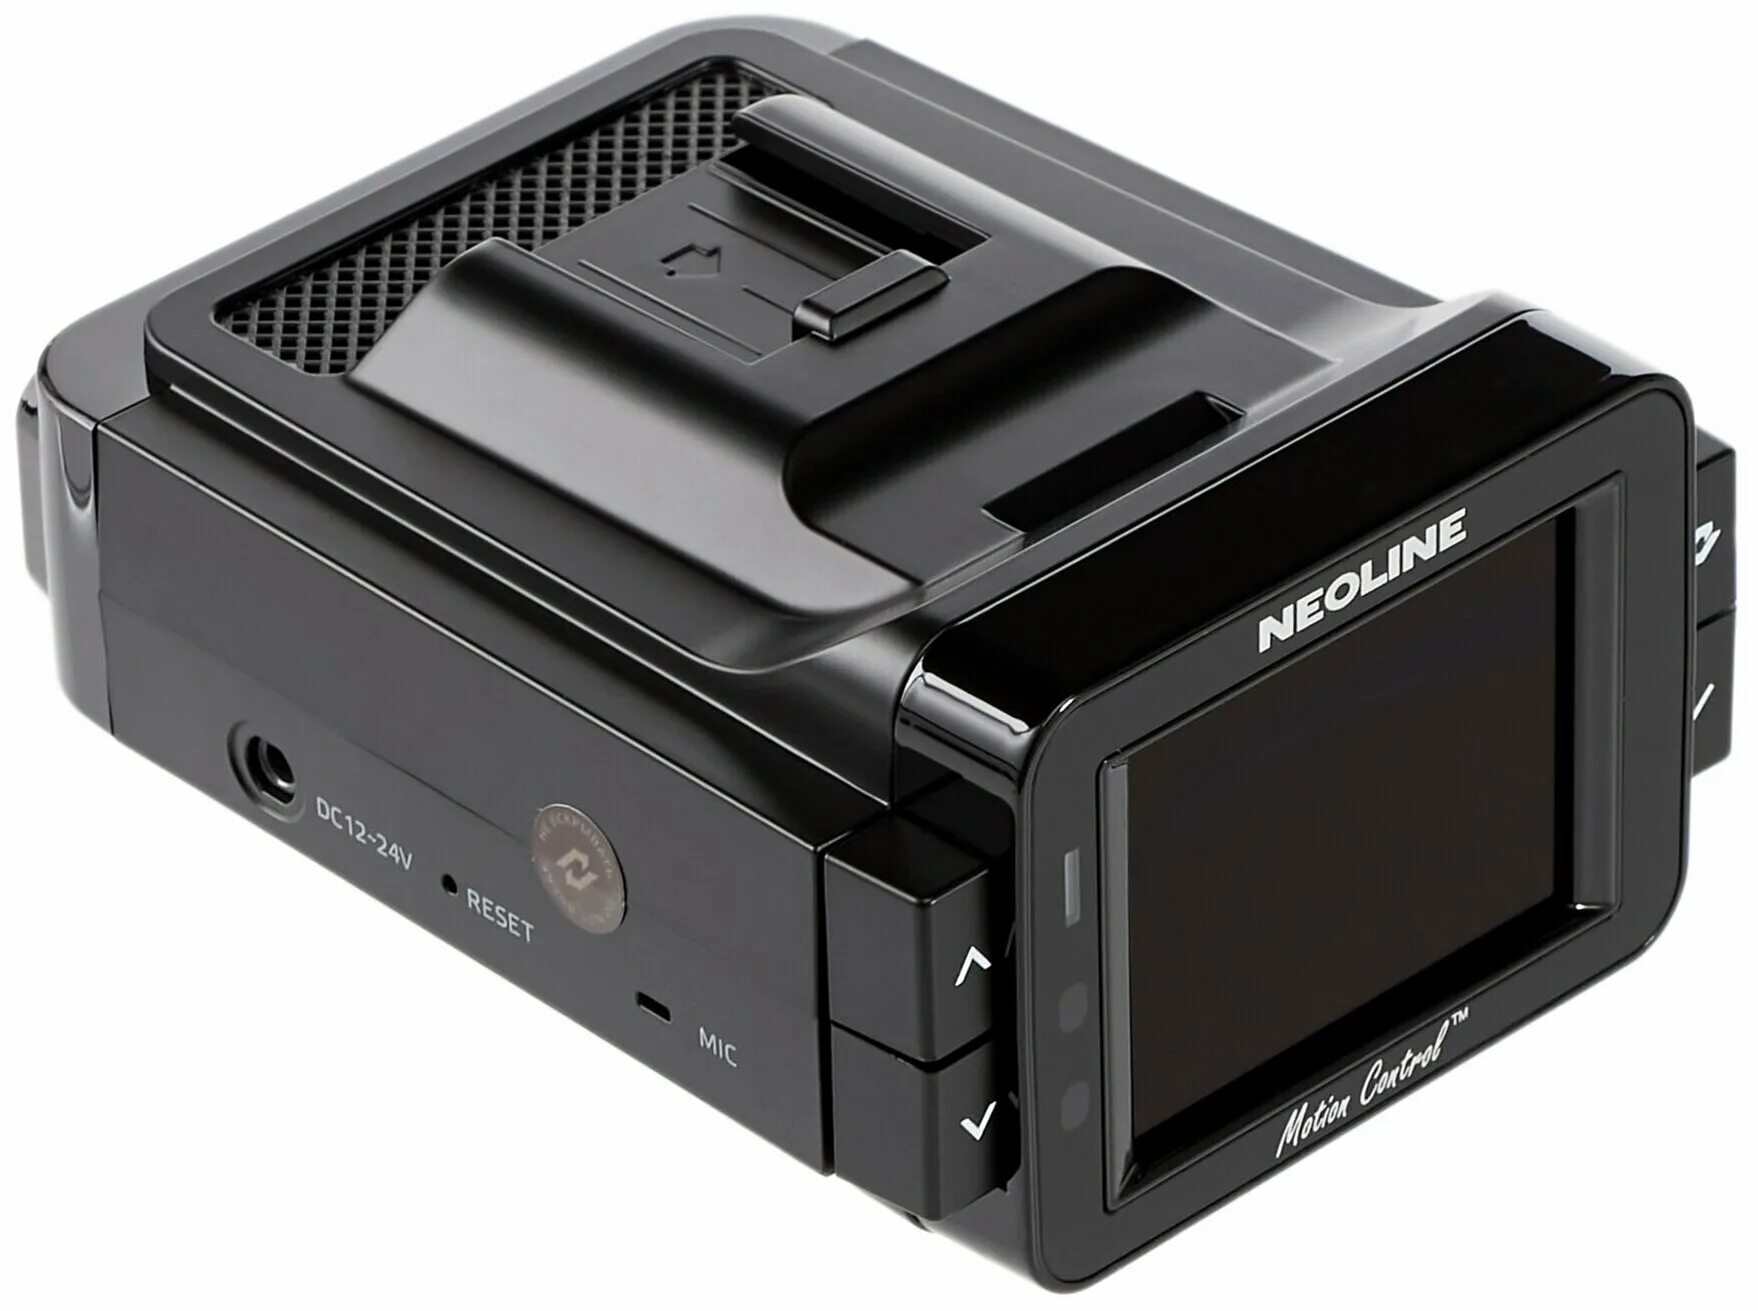 Neoline x cop 9100z. Видеорегистратор Neoline x-cop 9100s. Neoline 9100s характеристики. Neoline x-cop 9100s отзывы. Как настроить видеорегистратор x-cop 9100s.